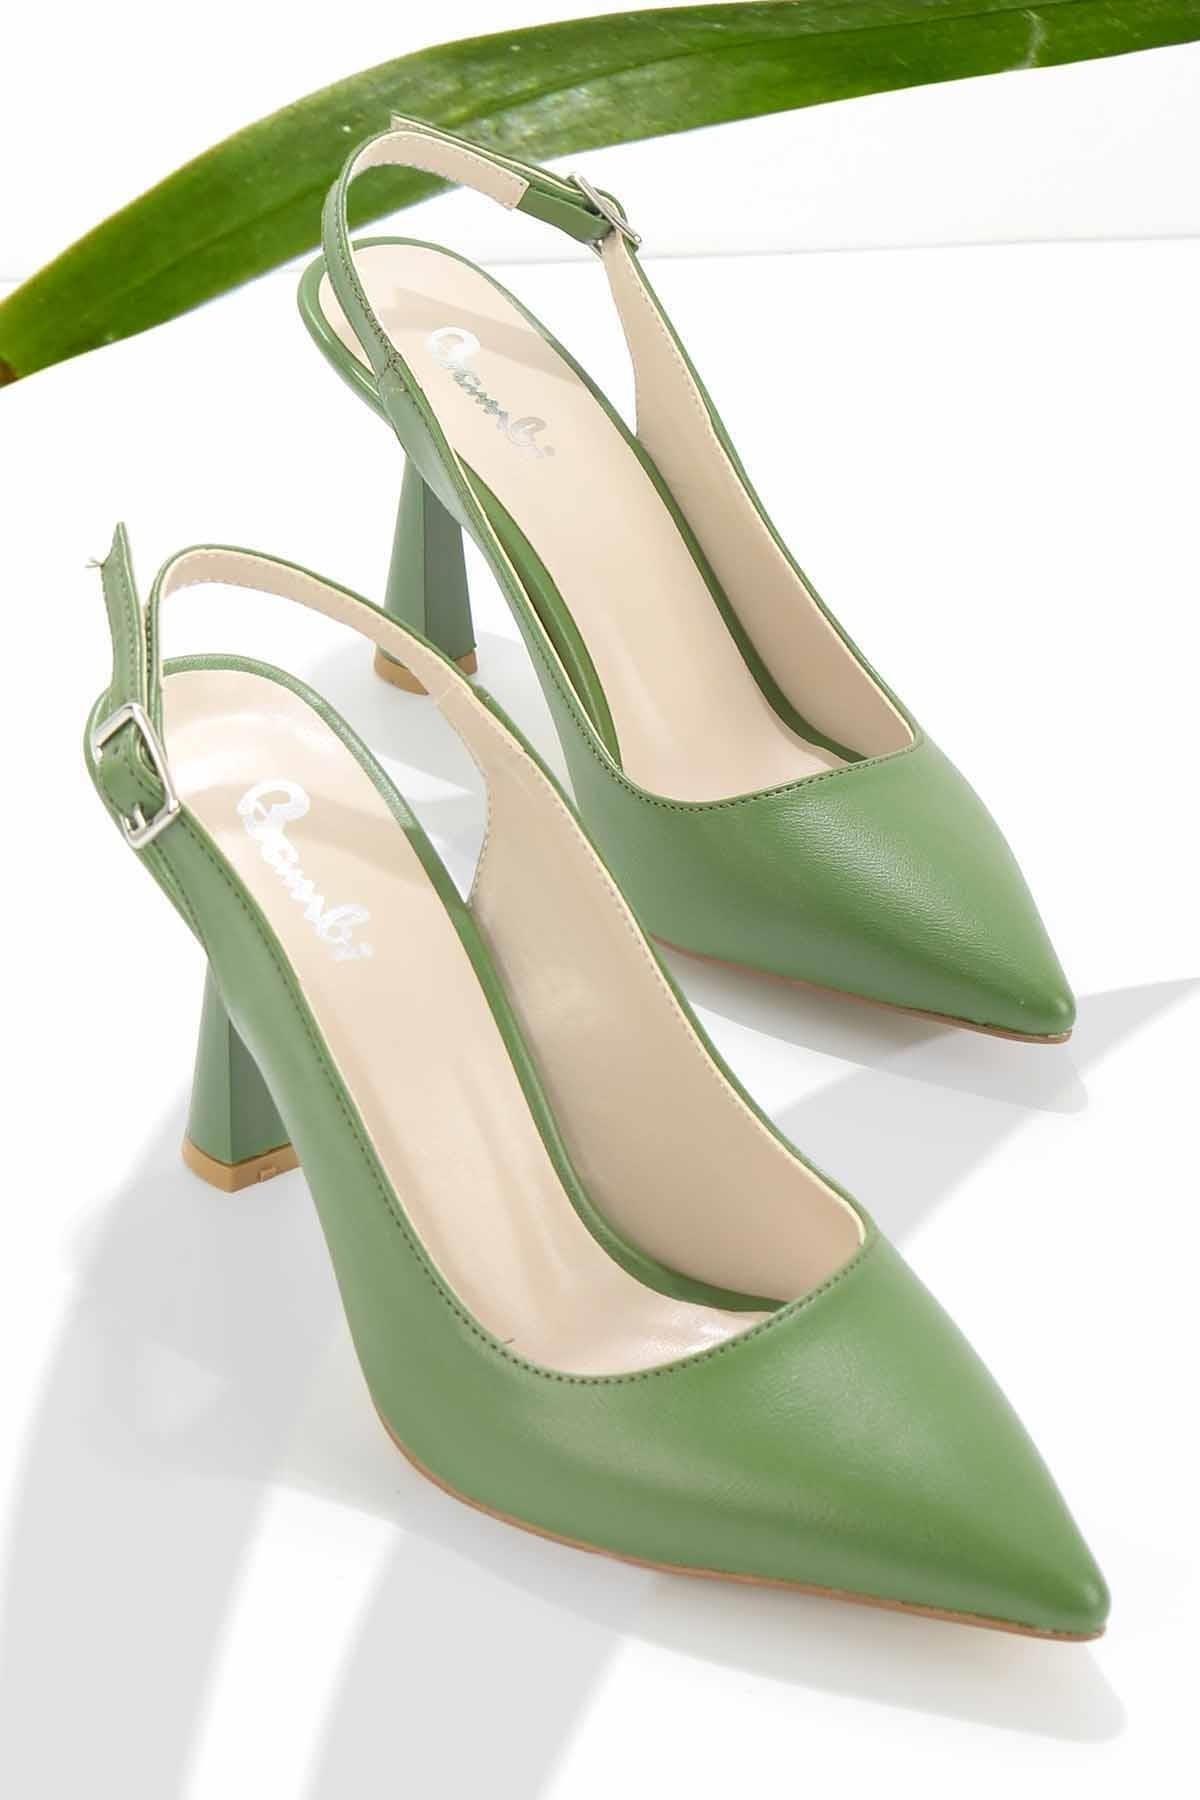 Bambi Yeşil Kadın Klasik Topuklu Ayakkabı K01992000109